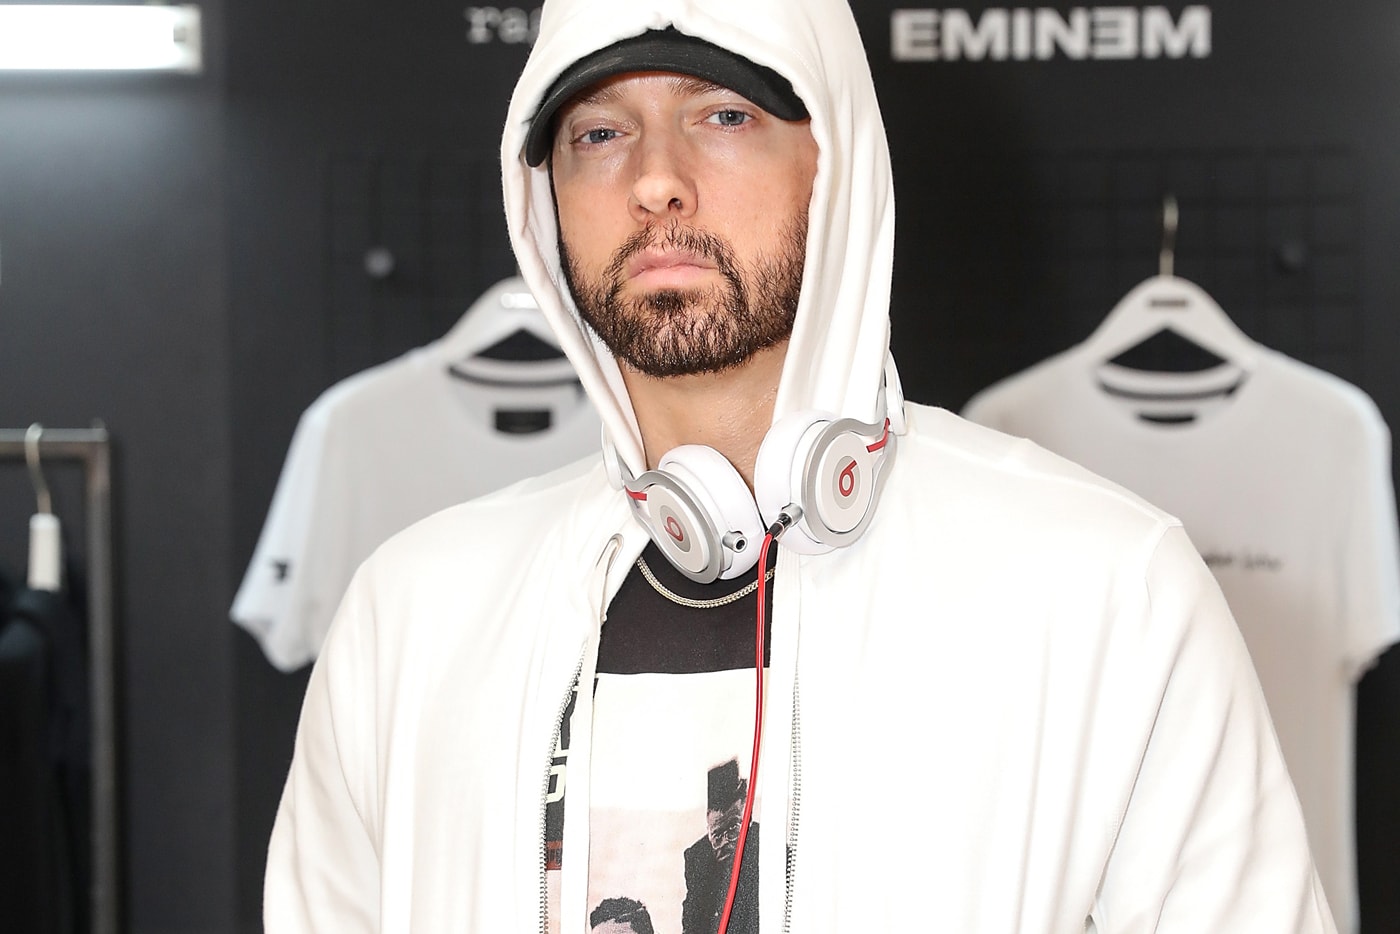 Eminem 2018 Revival European Tour Dates Cities Album Leak Single Music Video EP Mixtape Download Stream Discography 2018 Live Show Performance Tour Dates Album Review Tracklist Remix